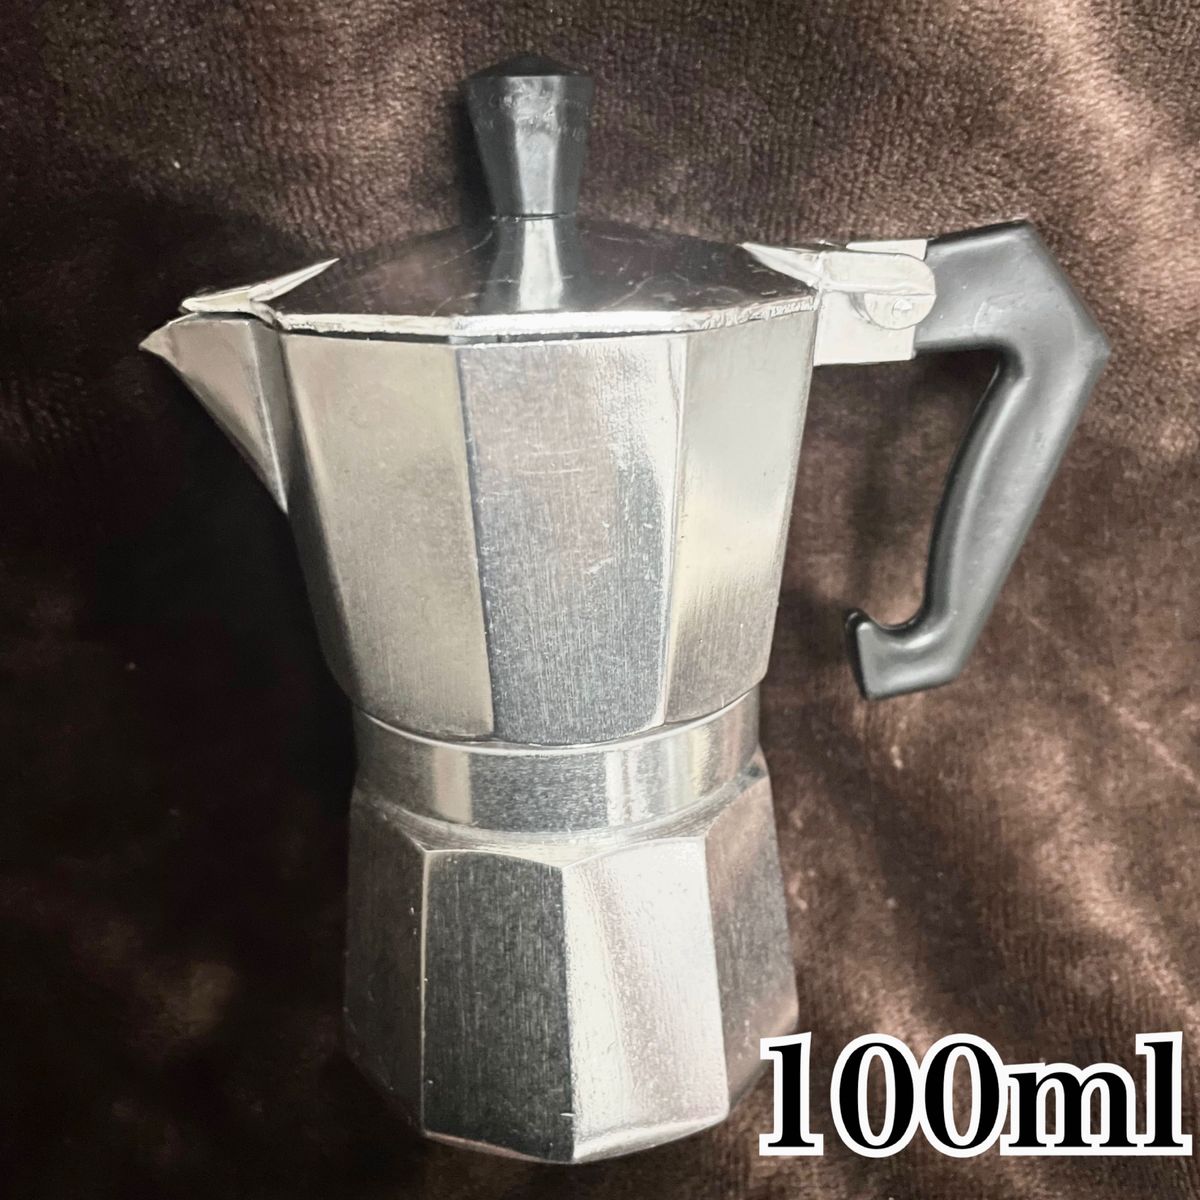 100ml コーヒーメーカー モカ2杯分 エスプレッソメーカー アルミポット